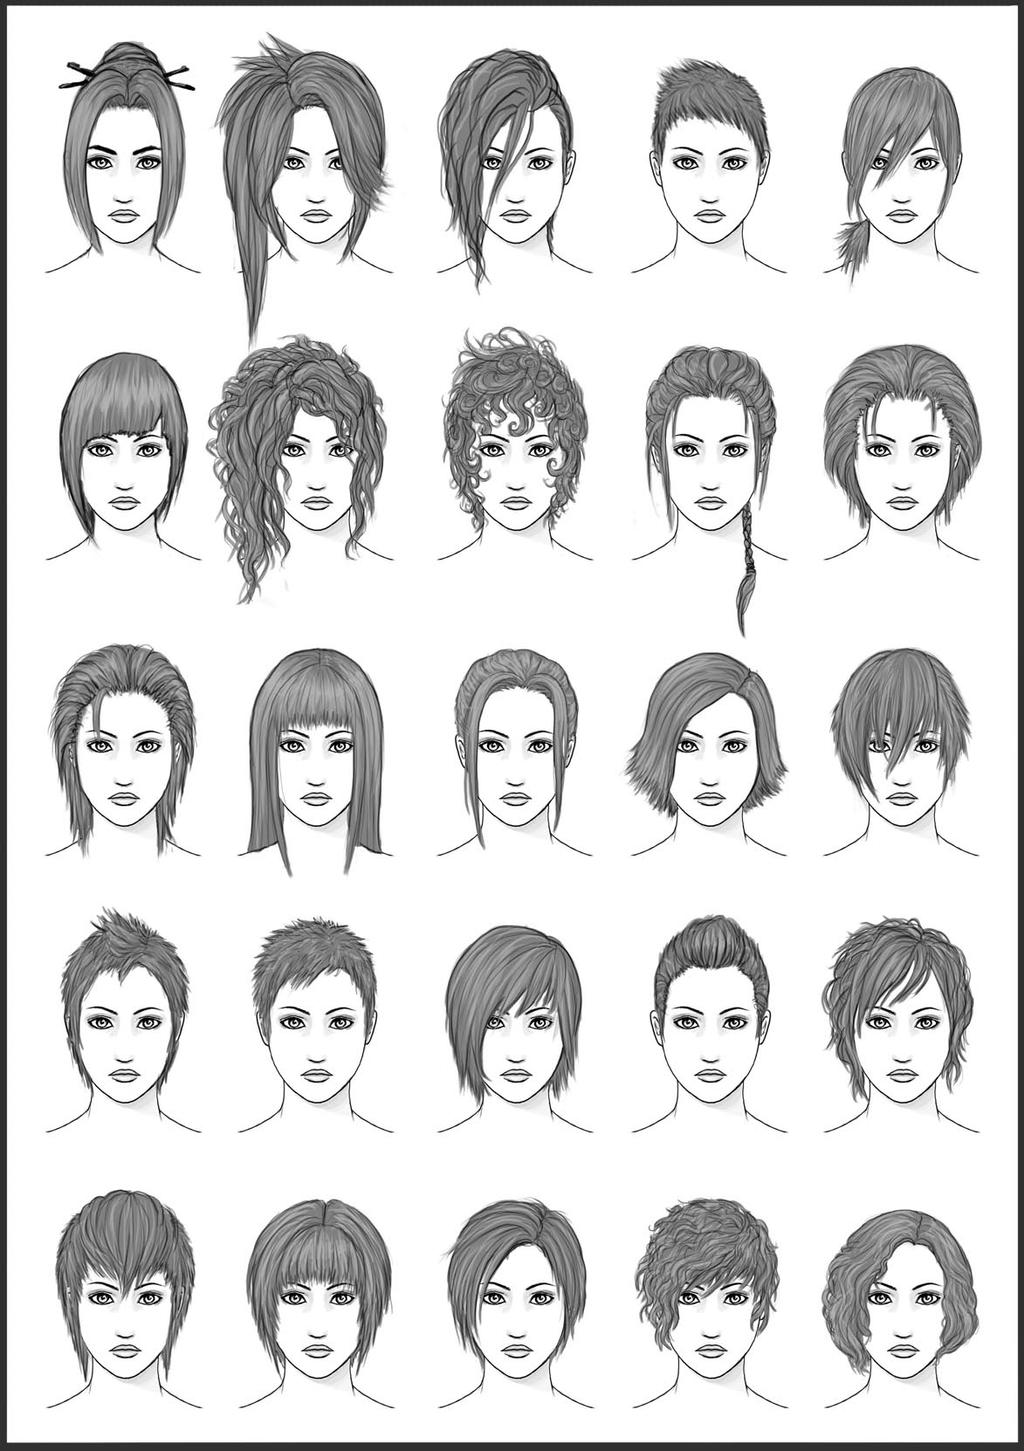 Women's Hair - Set 4 by dark-sheikah on DeviantArt